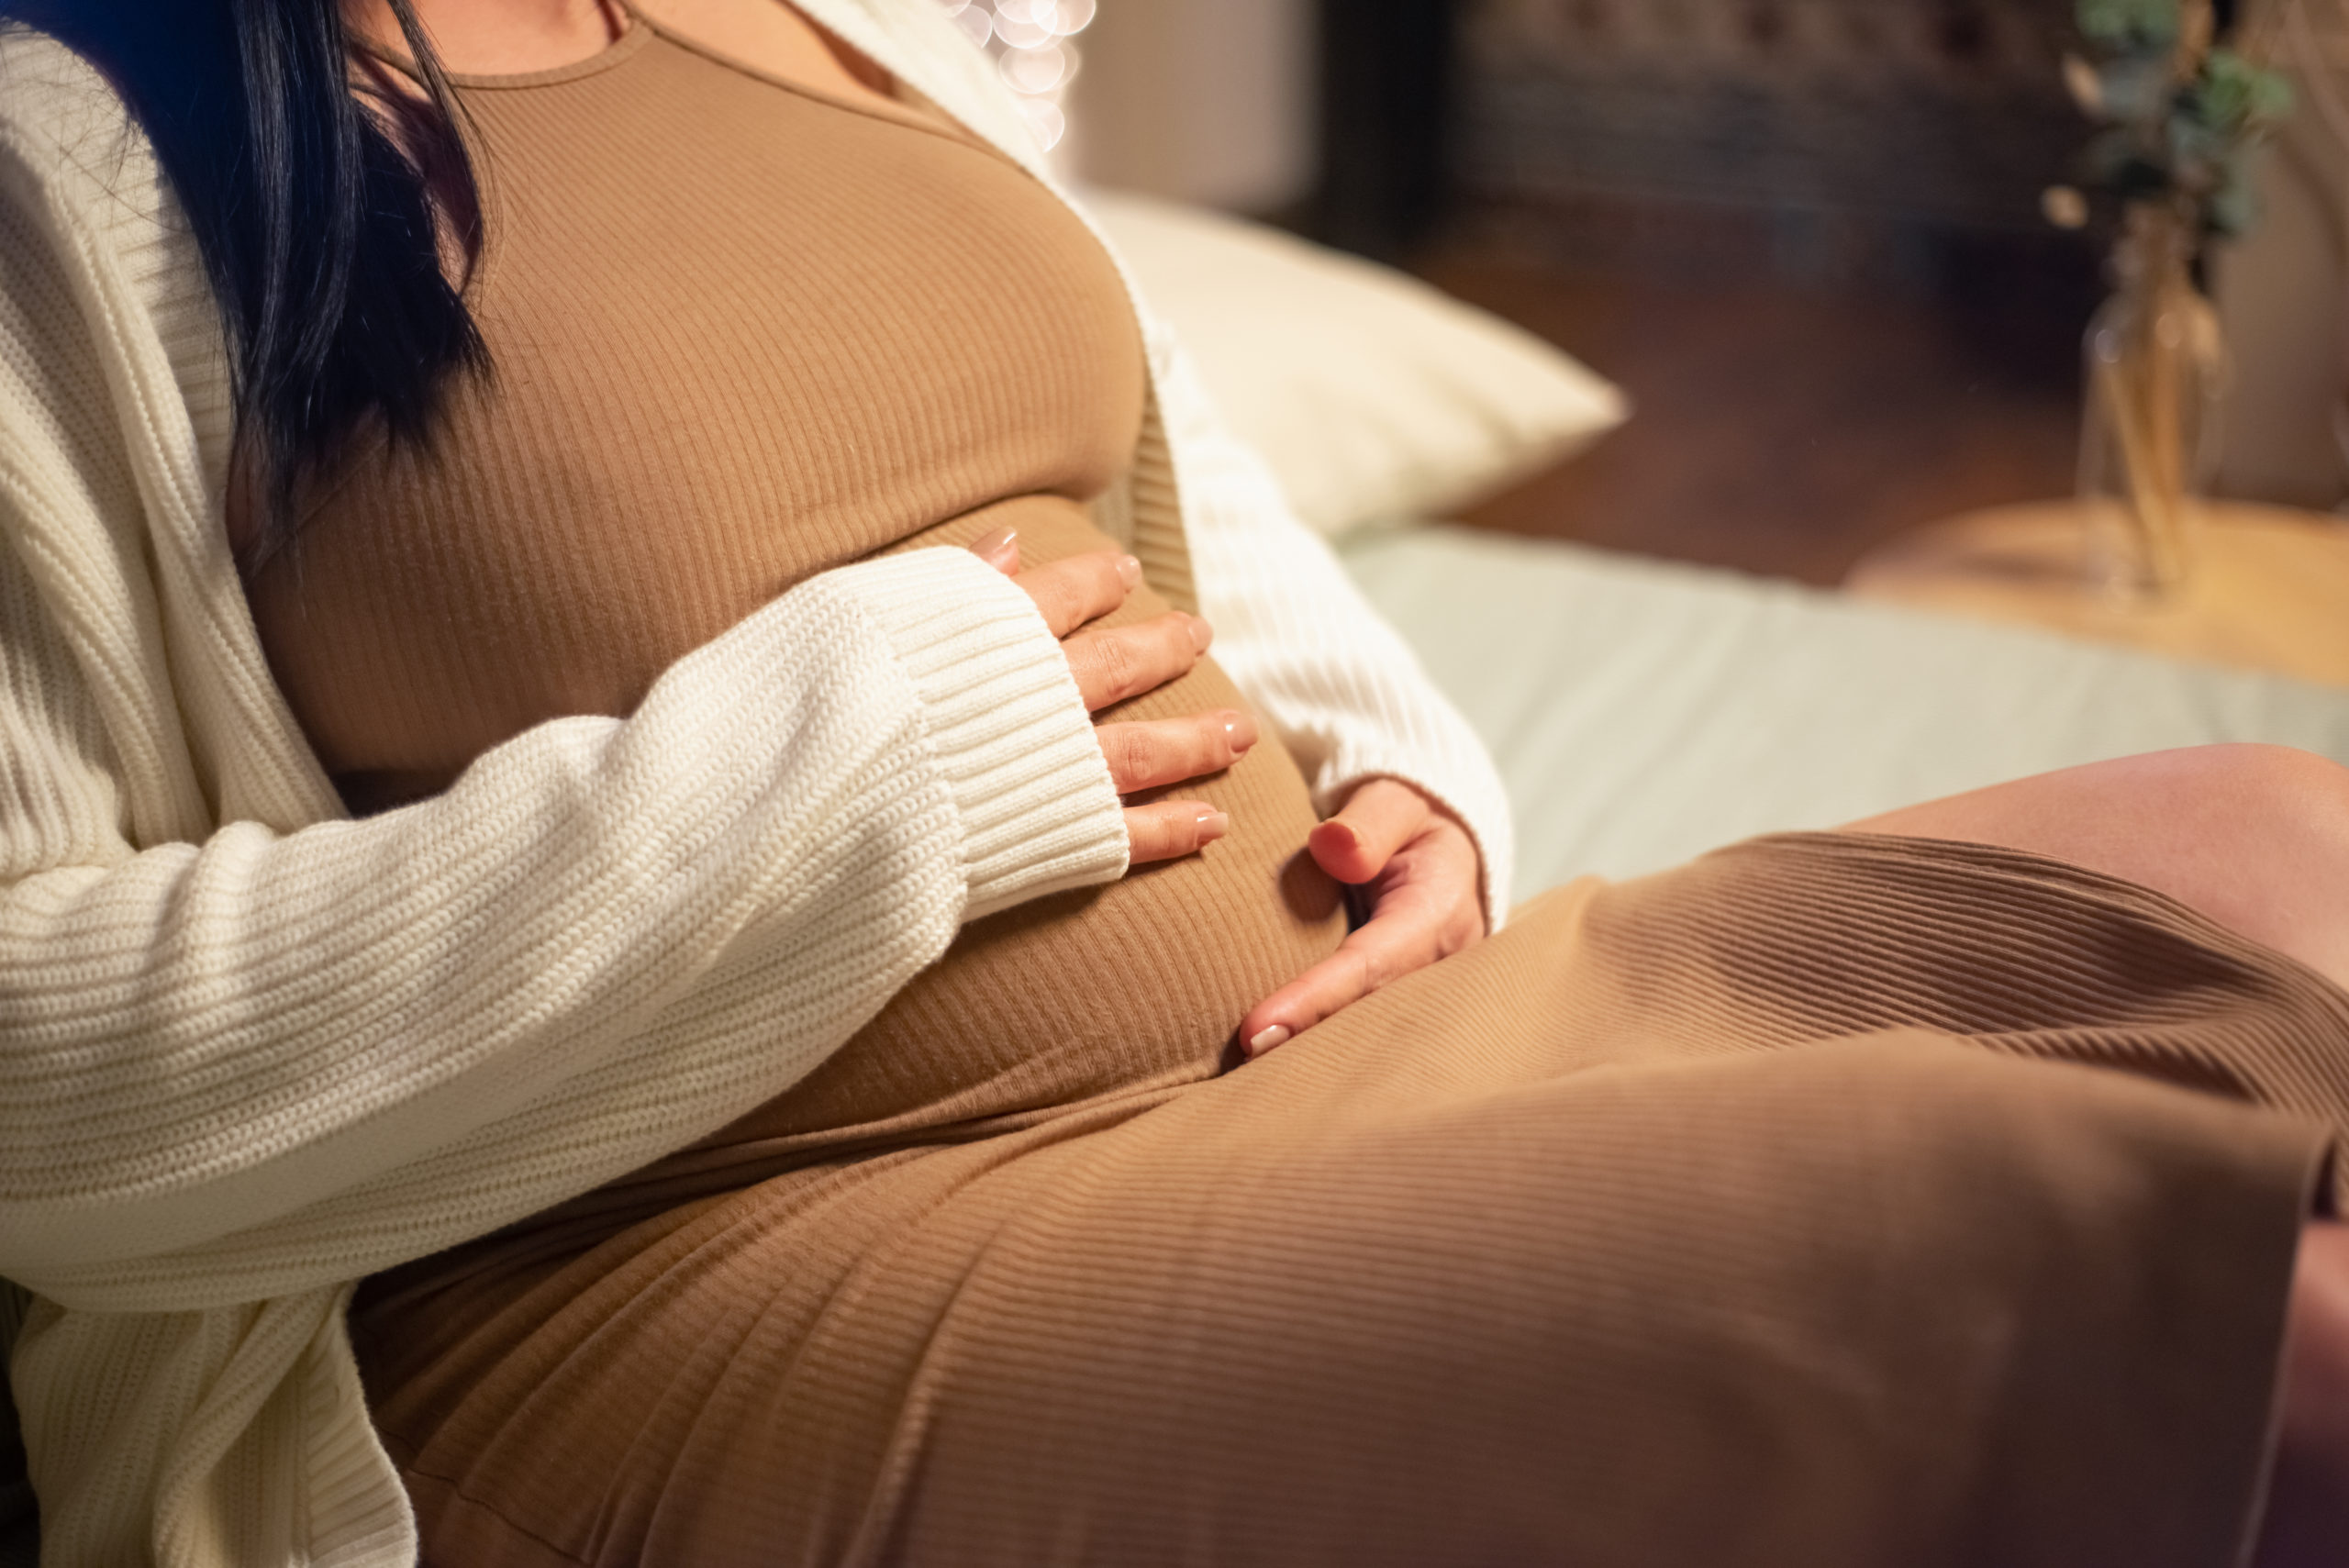 Femme enceinte sans visage se tenant le ventre.